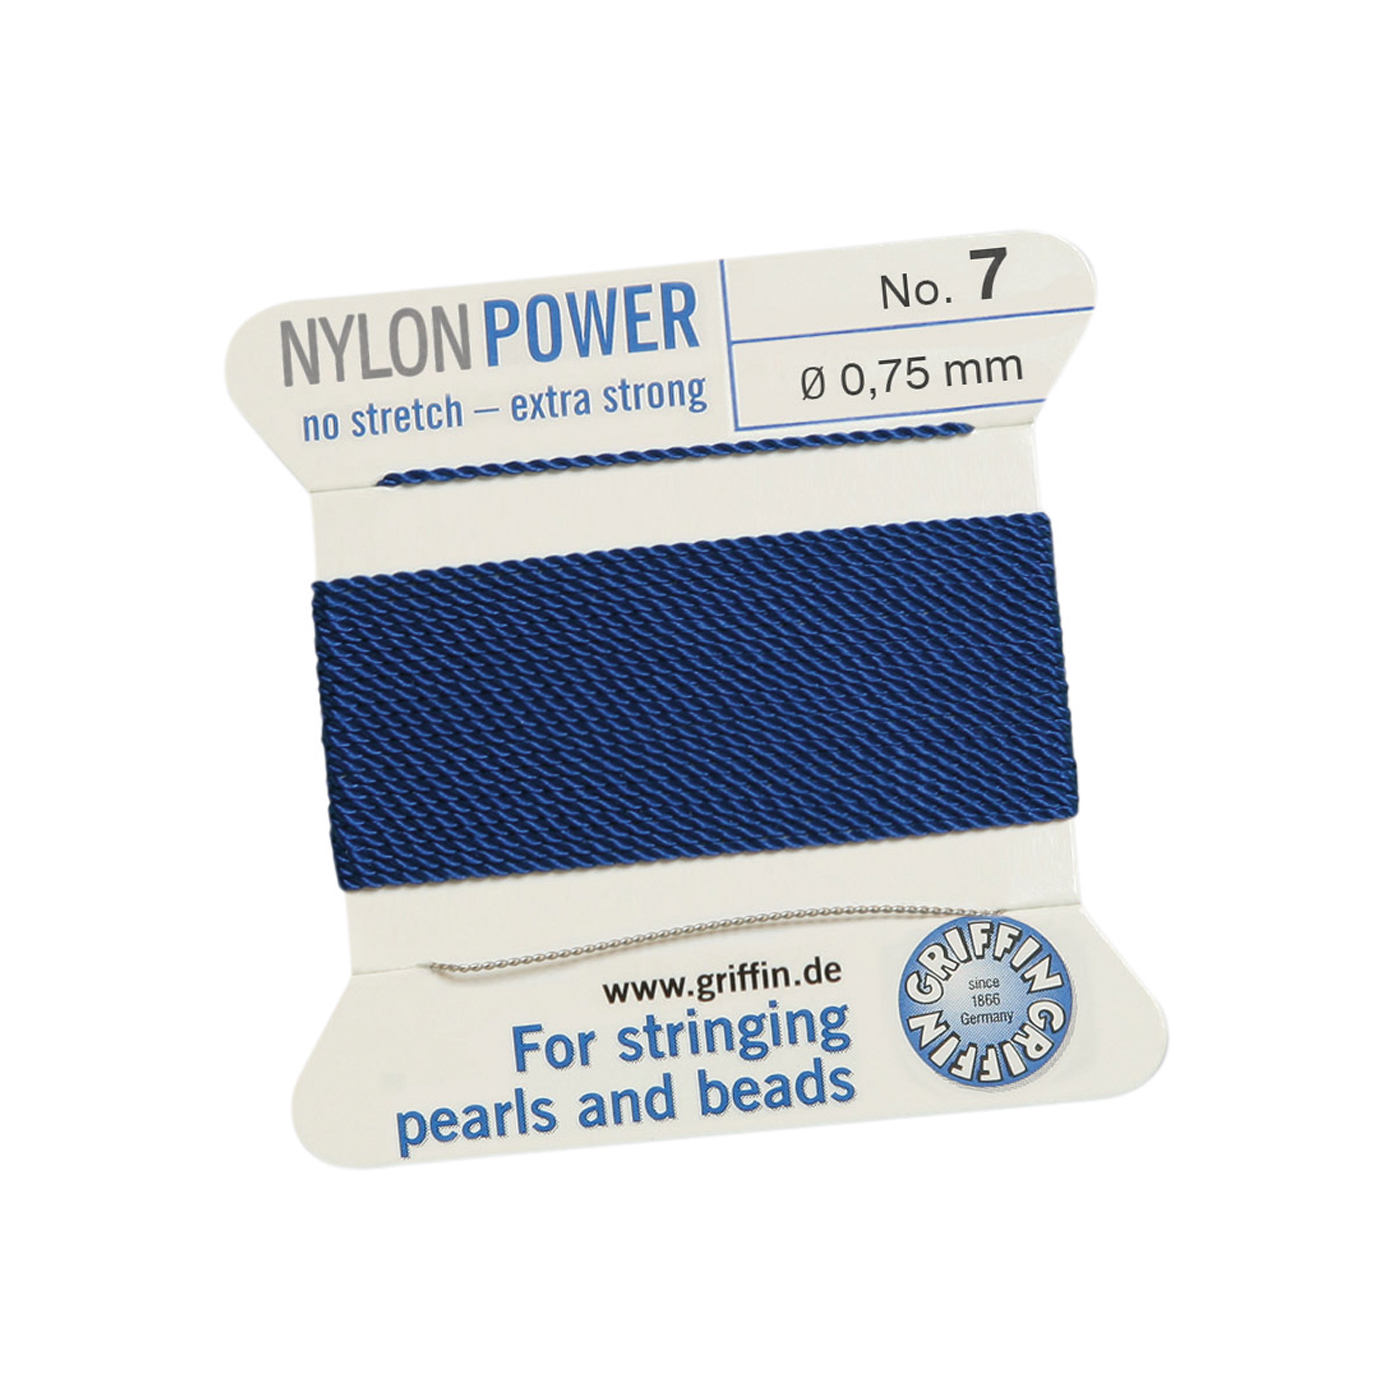 Bead Cord NylonPower, Dark Blue, No. 7 - 2 m